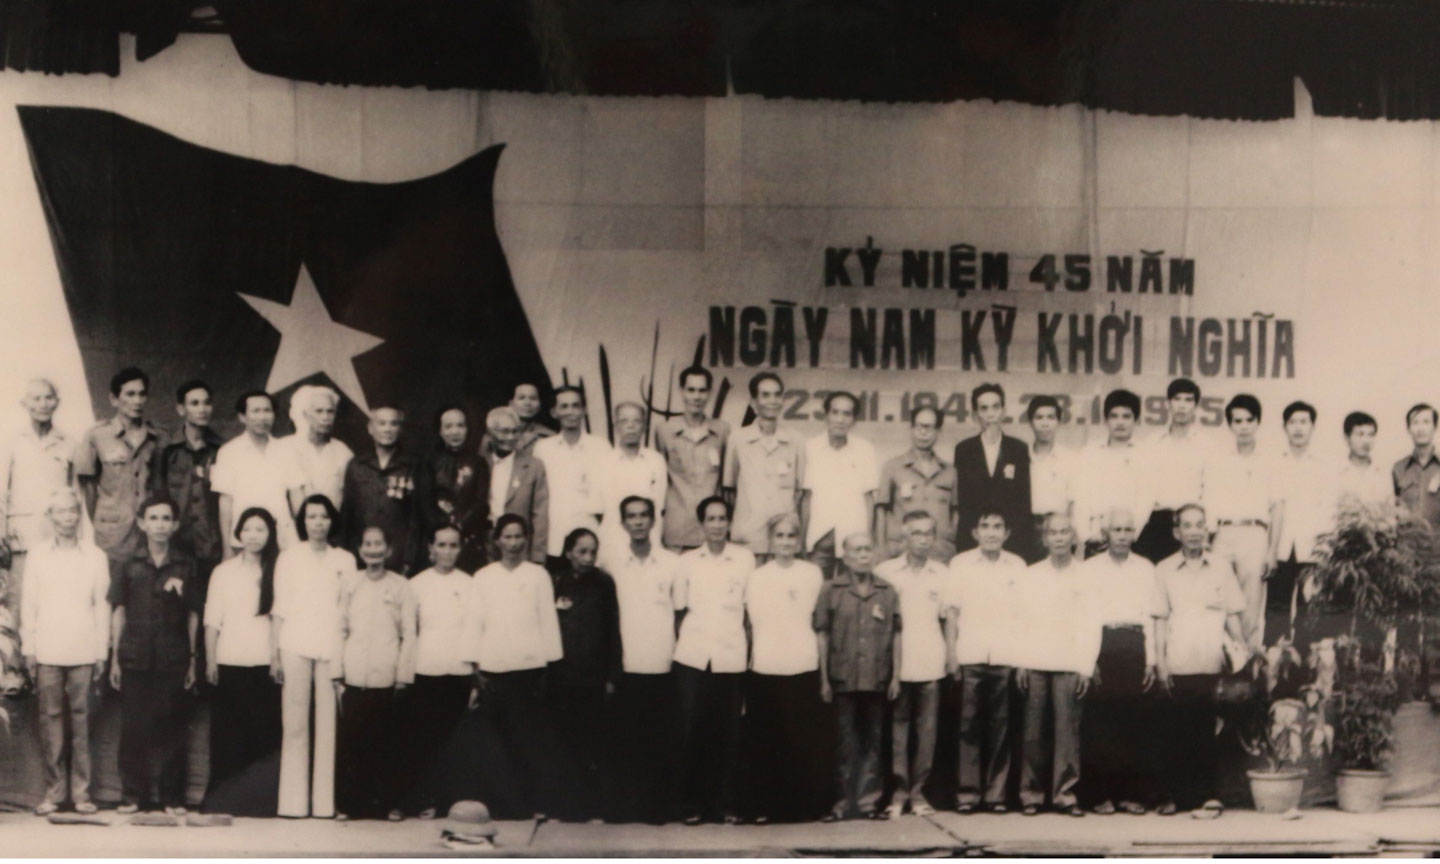 Đoàn Đại biểu tỉnh Tiền Giang tham dự lễ kỷ niệm 45 năm ngày Nam kỳ khởi nghĩa do Mặt trận Tổ quốc TP. Hồ Chí Minh tổ chức (23-11-1940 – 23-11-1985).